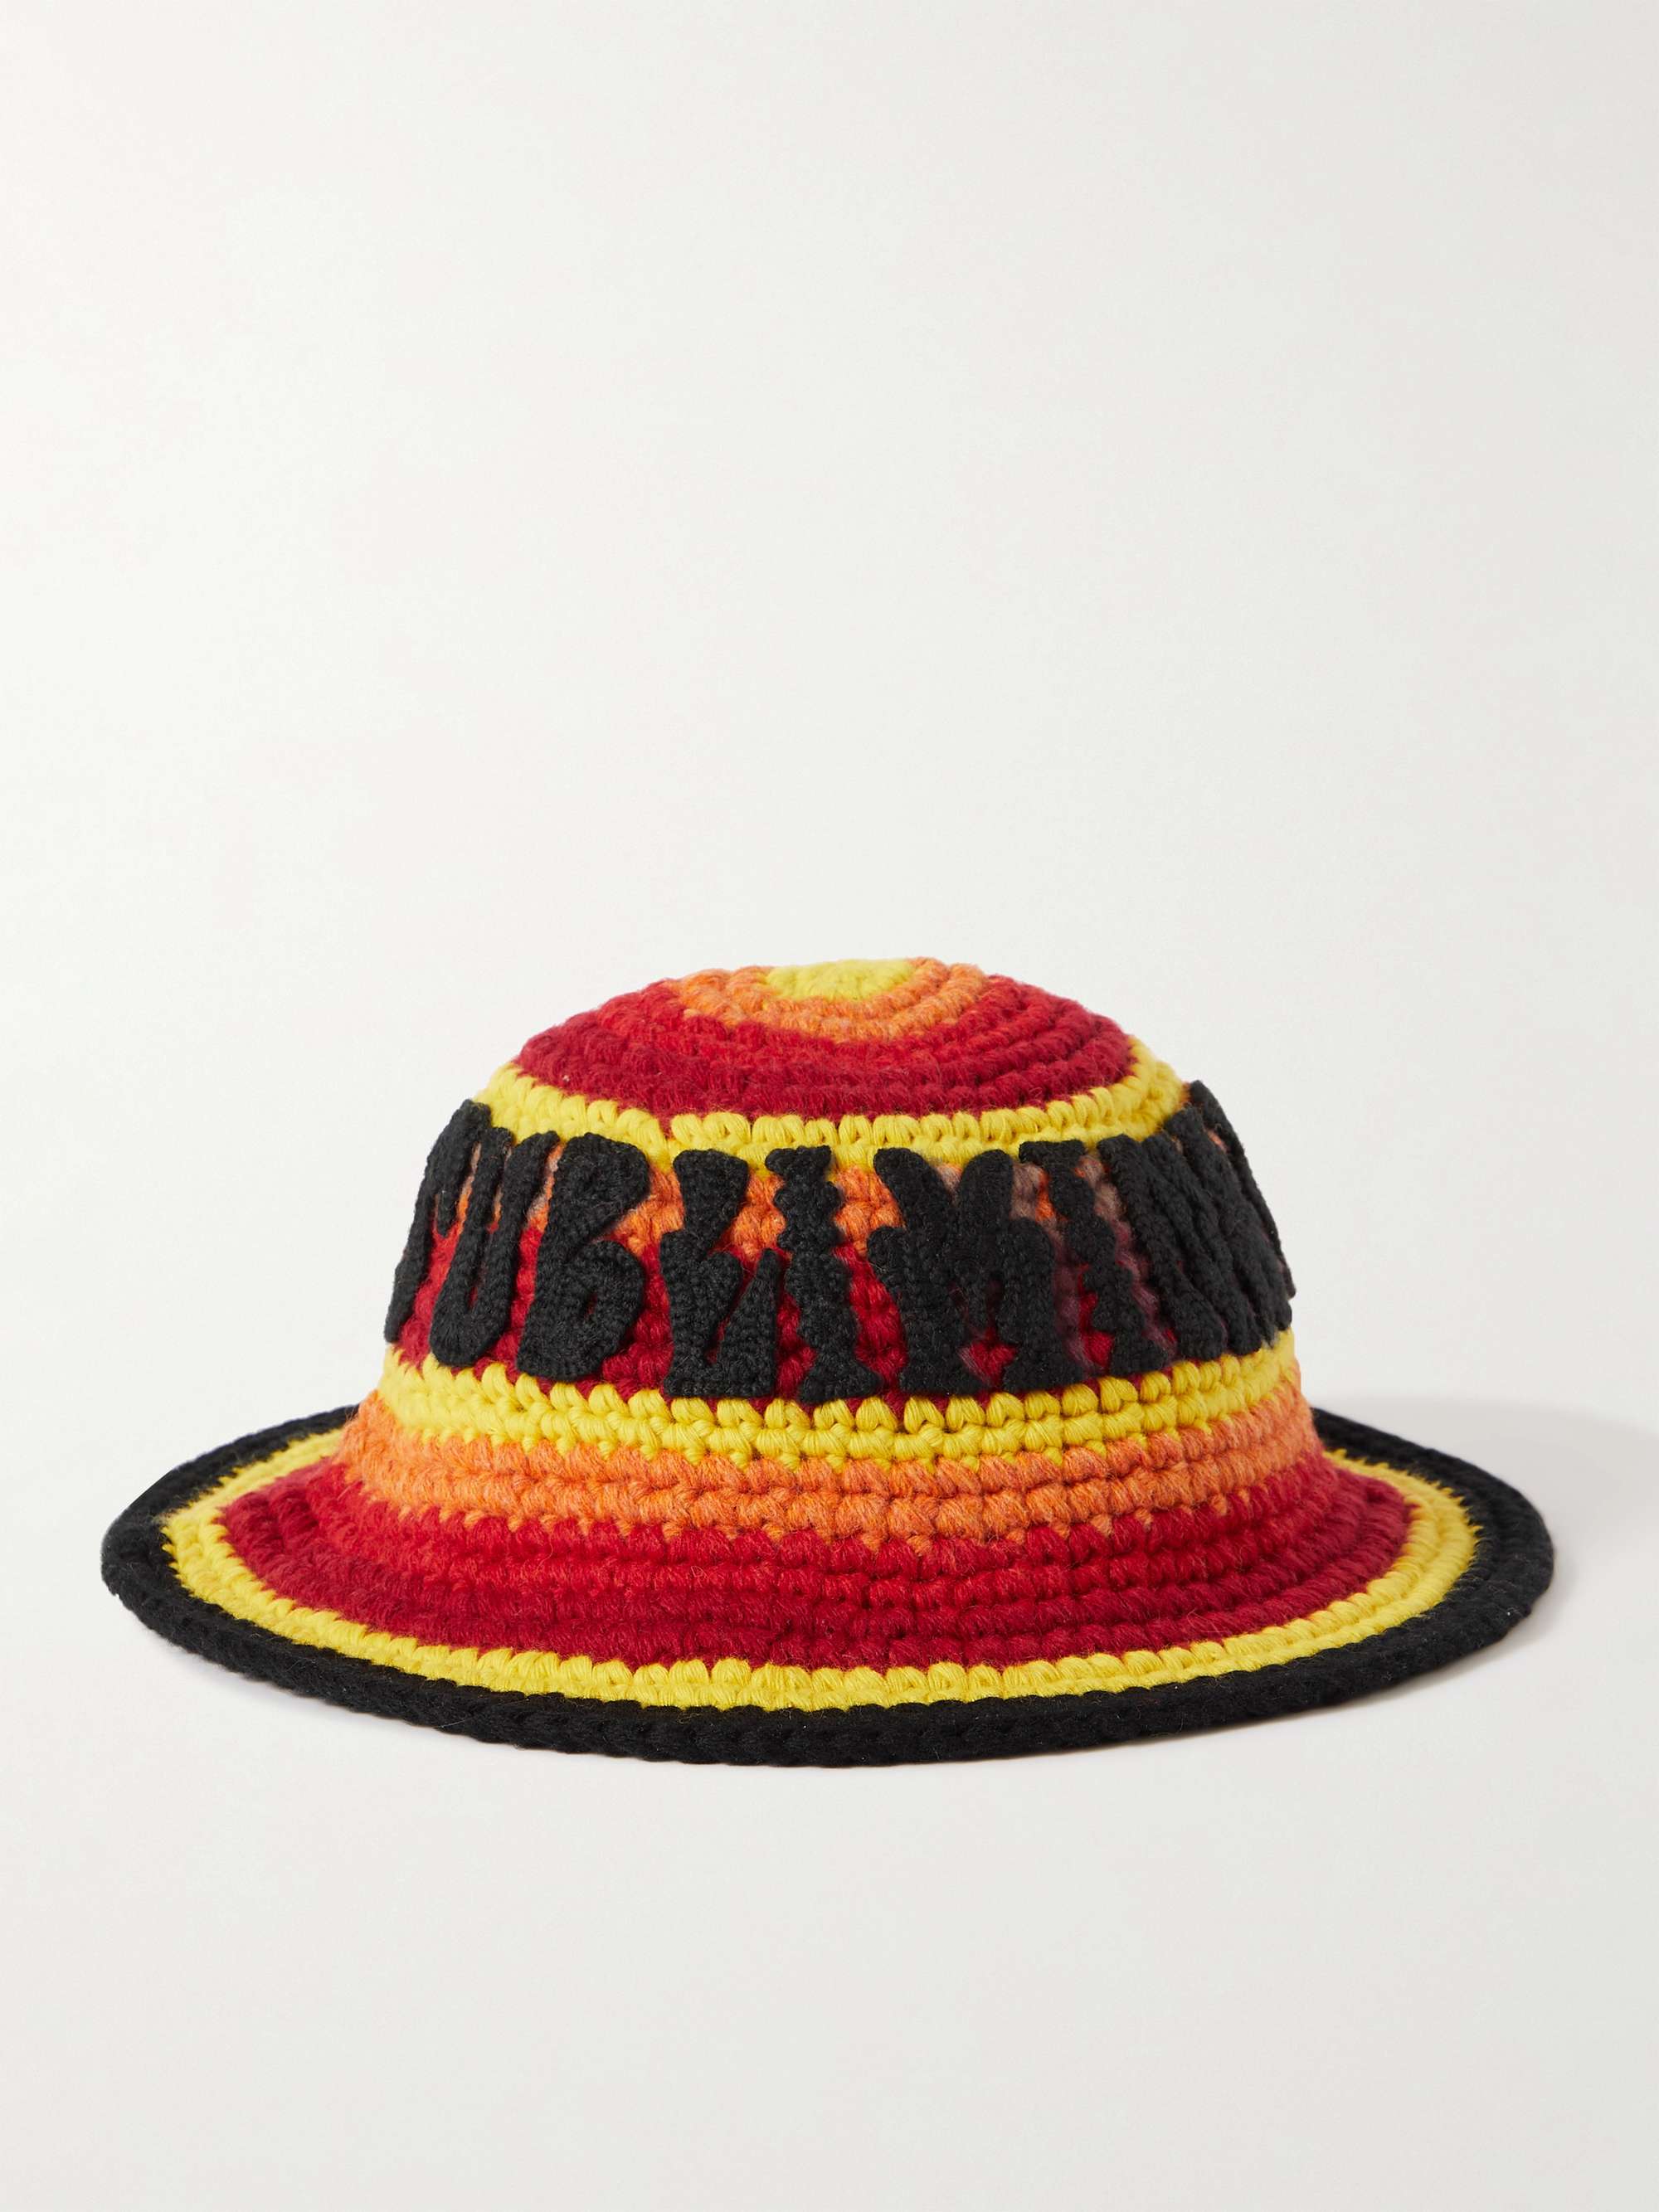 CELINE HOMME Appliquéd Striped Crochet-Knit Wool Hat